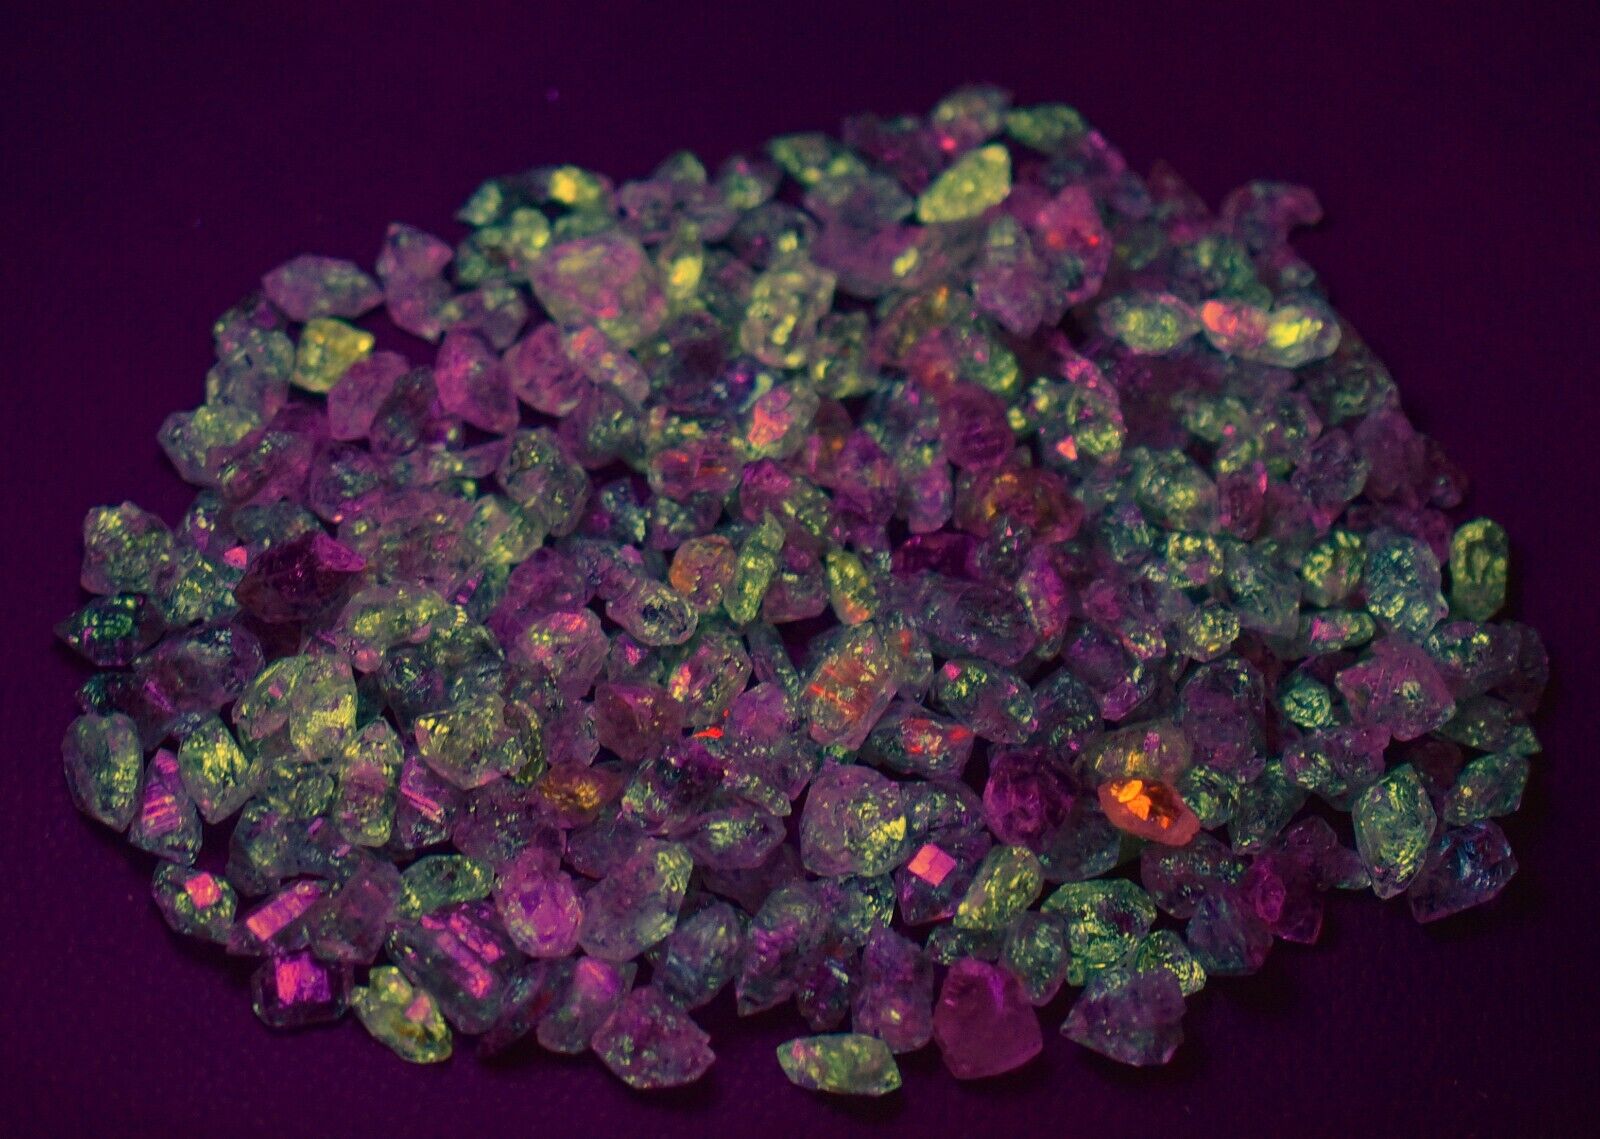 180 GM Unusual Fluorescent Double Terminated Petroleum Diamond Quartz Crystals